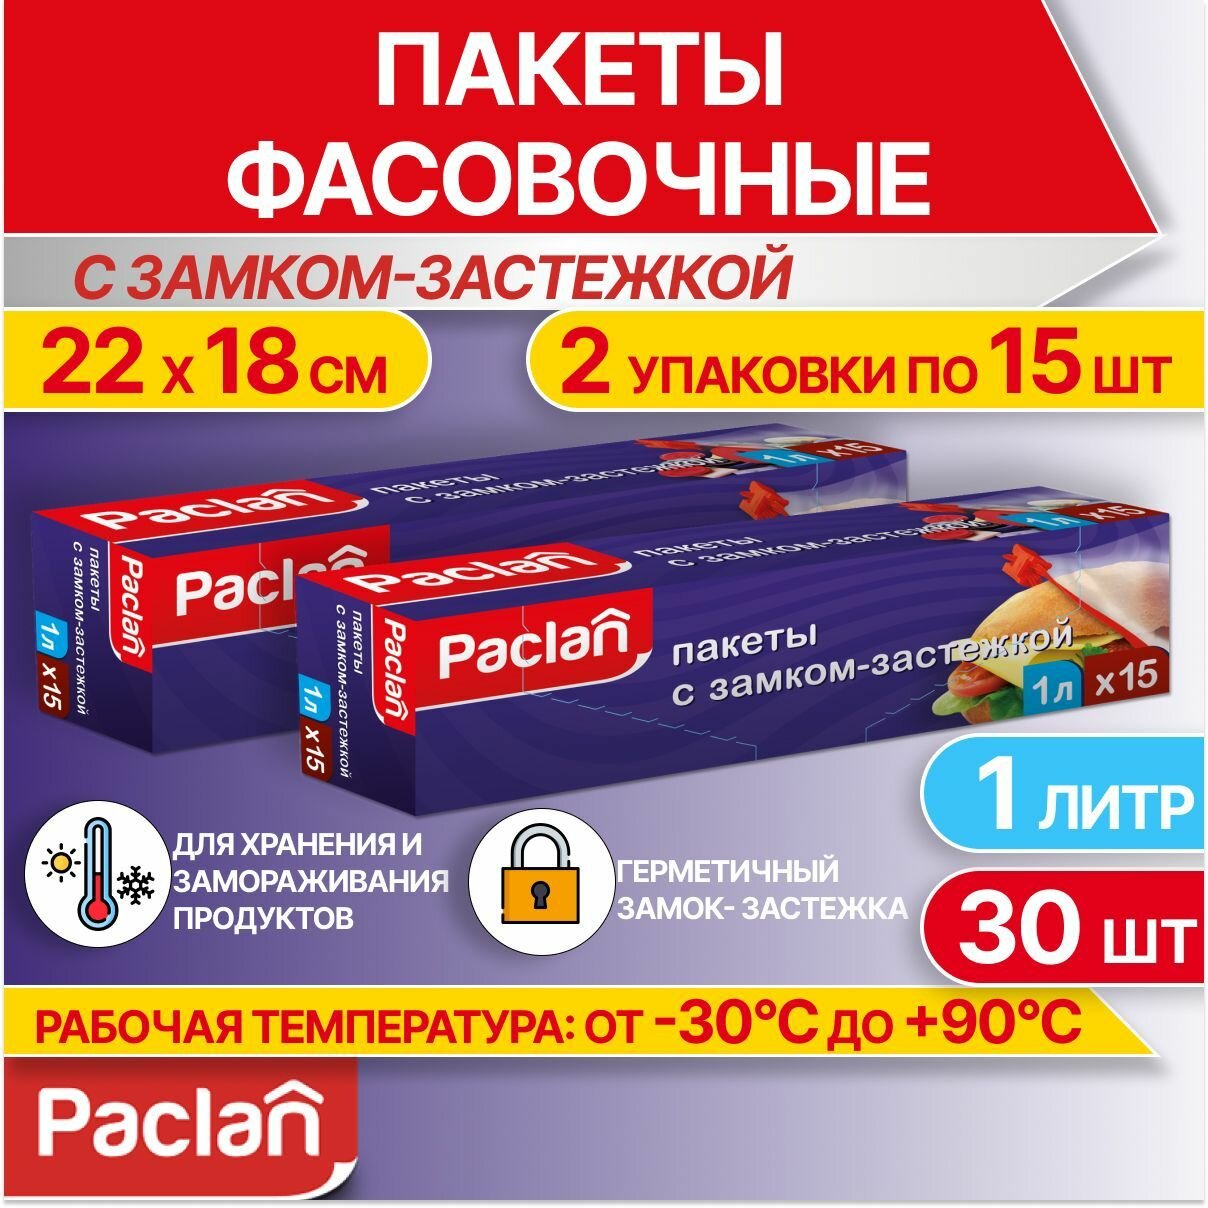 Пакеты фасовочные пищевые для хранения продуктов, с застежкой, 2 упаковки по 15 шт, 1 л, 22 х 18 см, Paclan